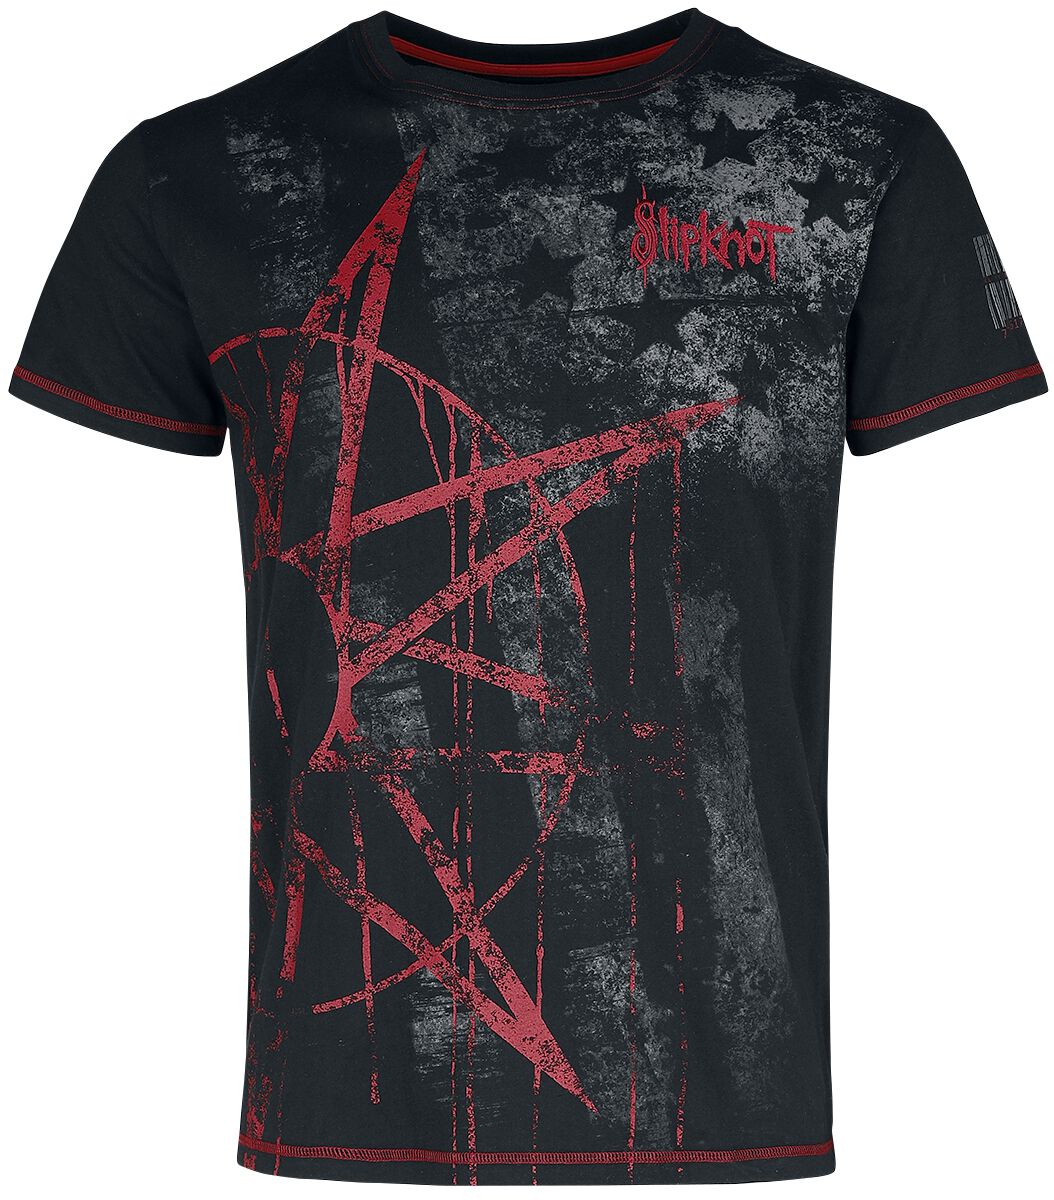 Slipknot T-Shirt - EMP Signature Collection - S bis 5XL - für Männer - Größe S - schwarz  - EMP exklusives Merchandise!